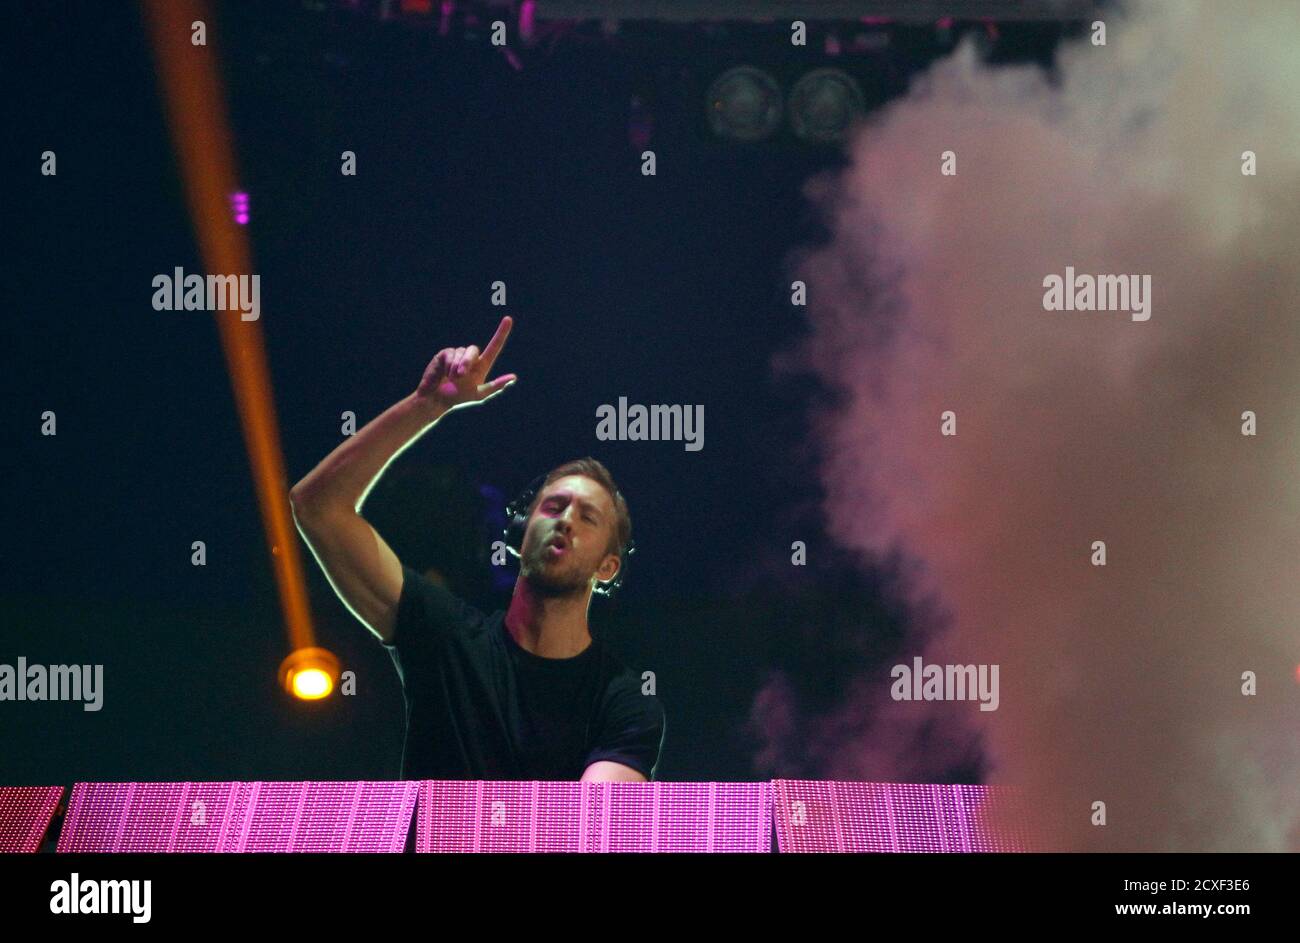 Le DJ écossais Calvin Harris se produit lors du festival de musique iHeartRadio 2014 à Las Vegas, début septembre 21, 2014. REUTERS/Steve Marcus (ETATS-UNIS - Tags: ENTERTAINMENT) Banque D'Images